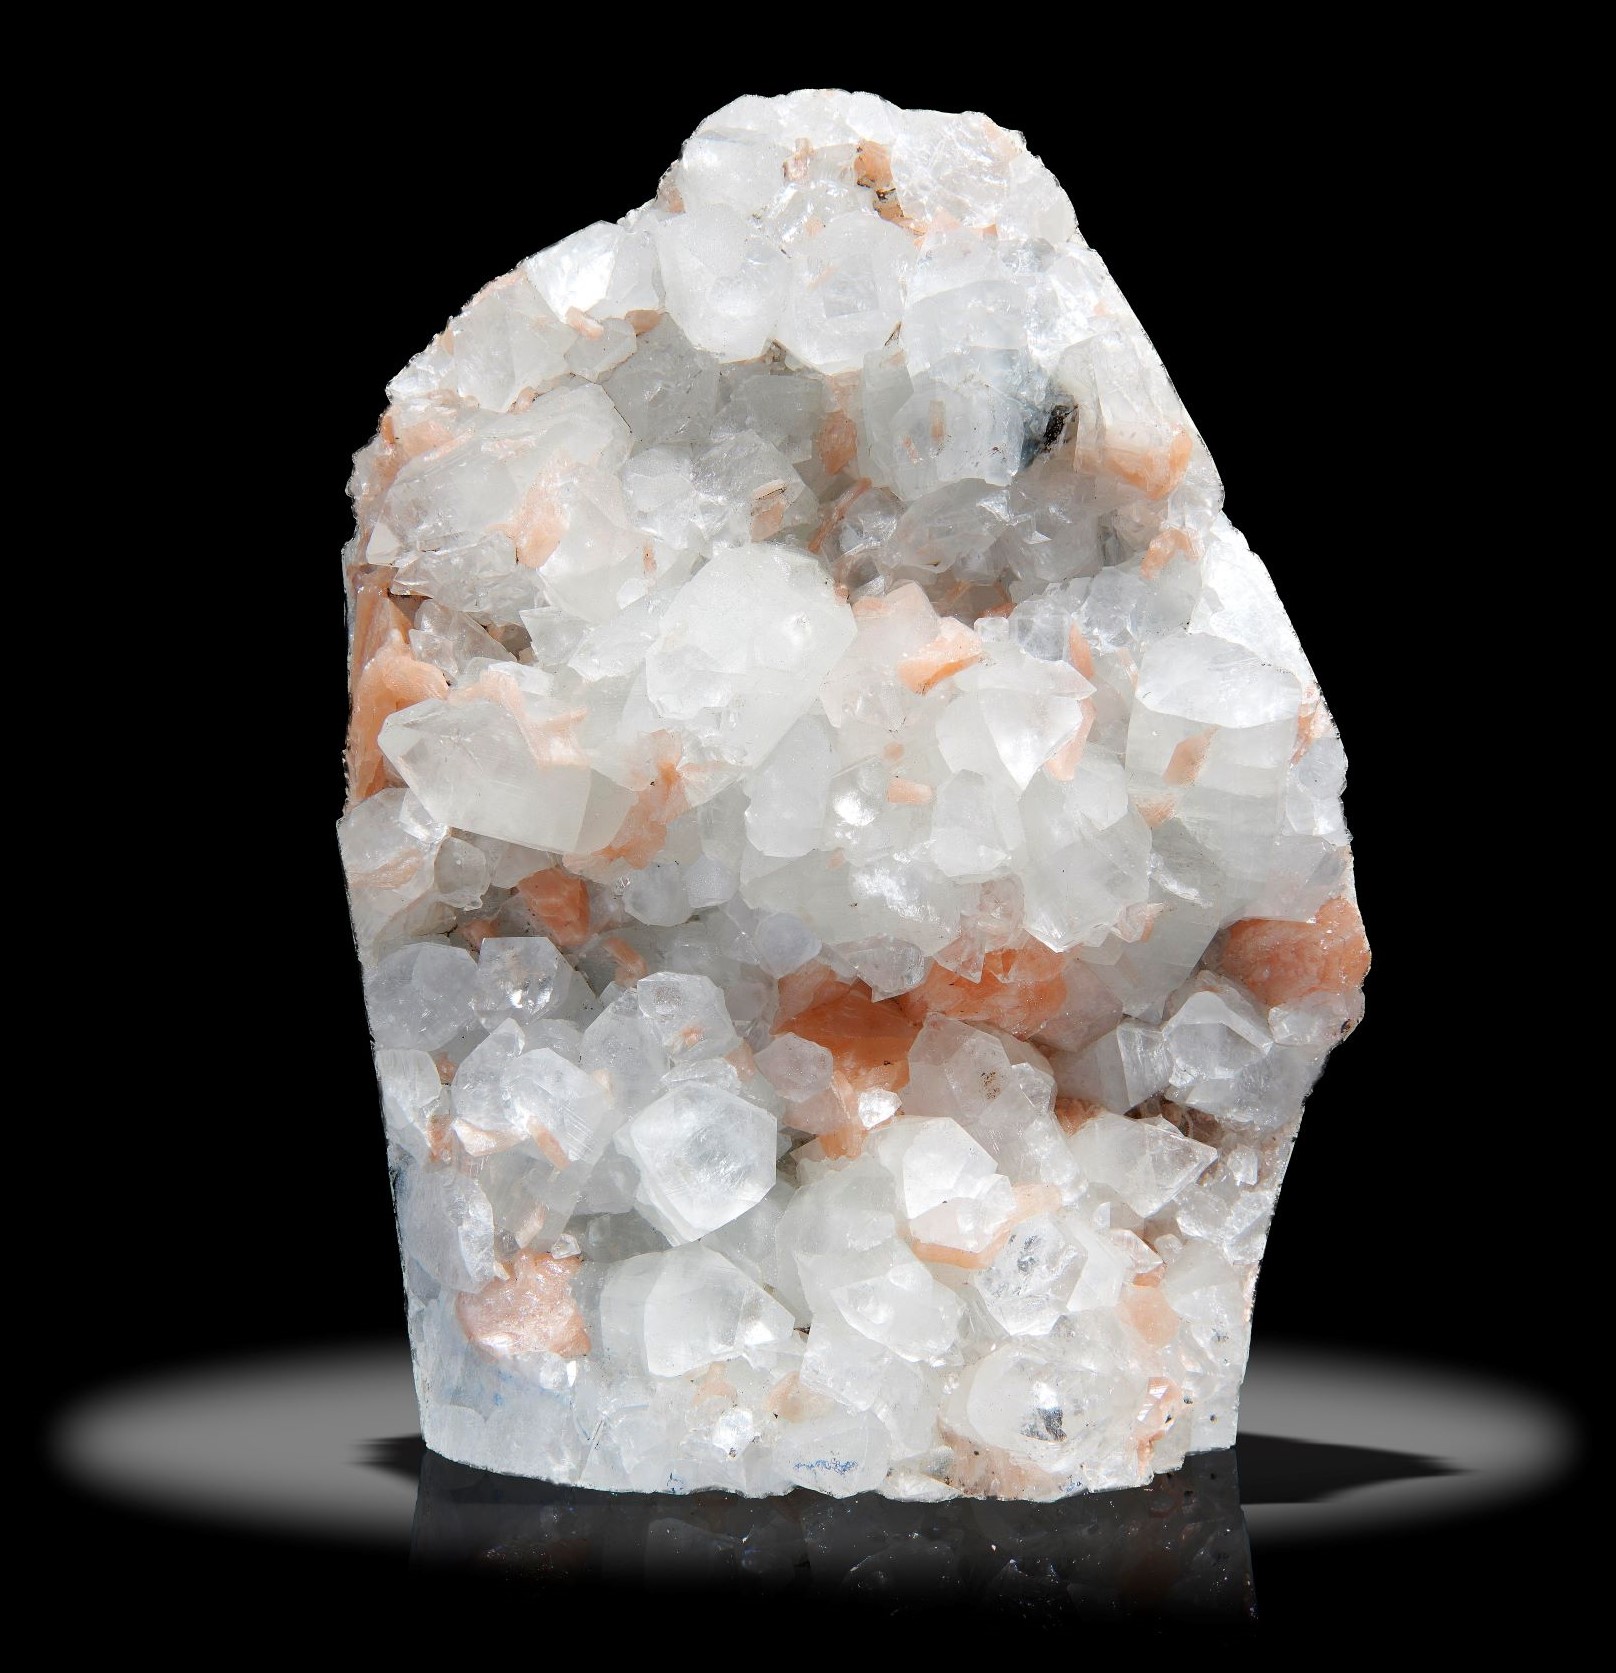 Interior Design/Minerals: A quartz and calcite freeform, 24cm high by 9cm wide, 5.6kg